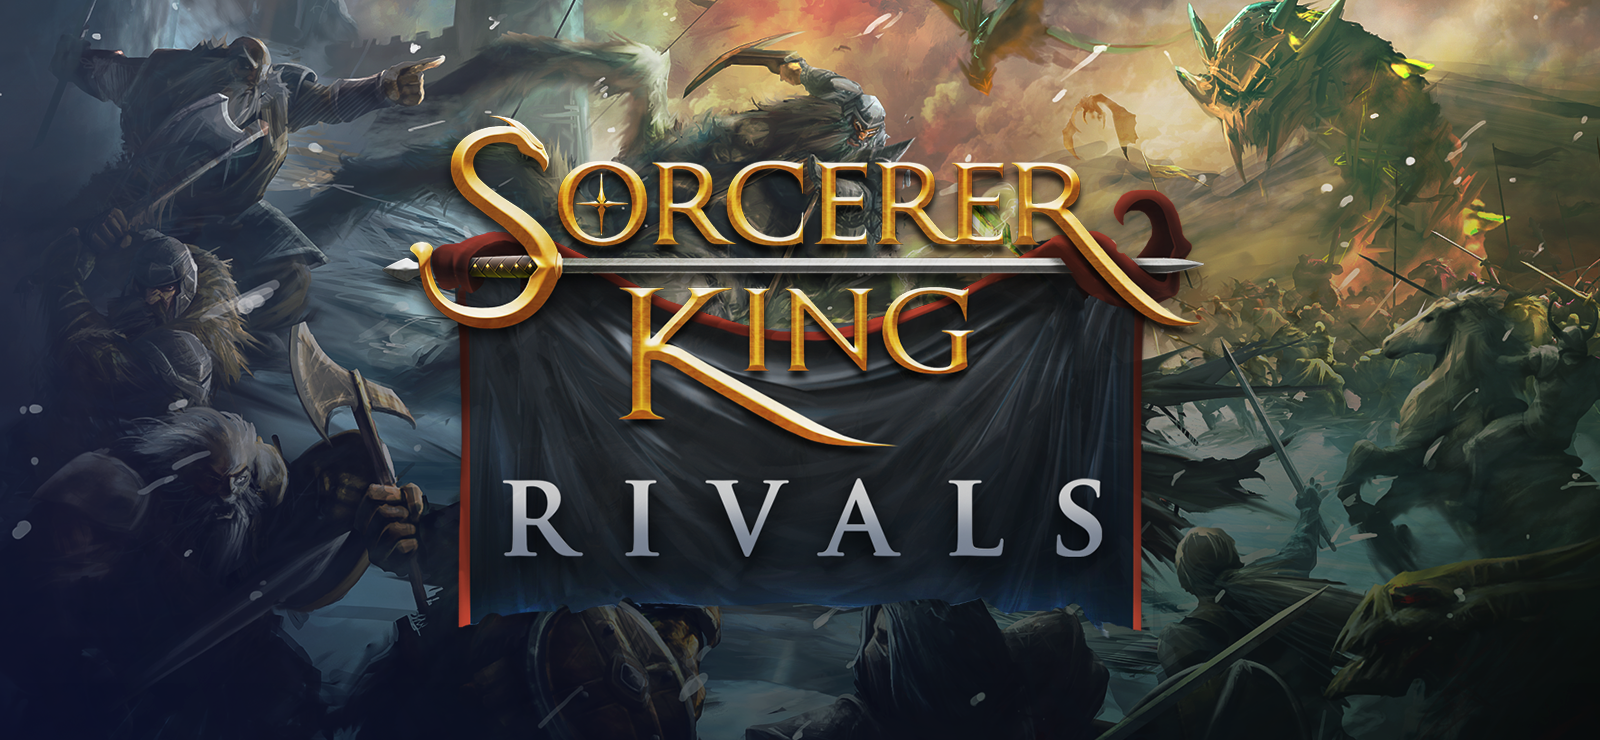 Sorcerer King – Rivals